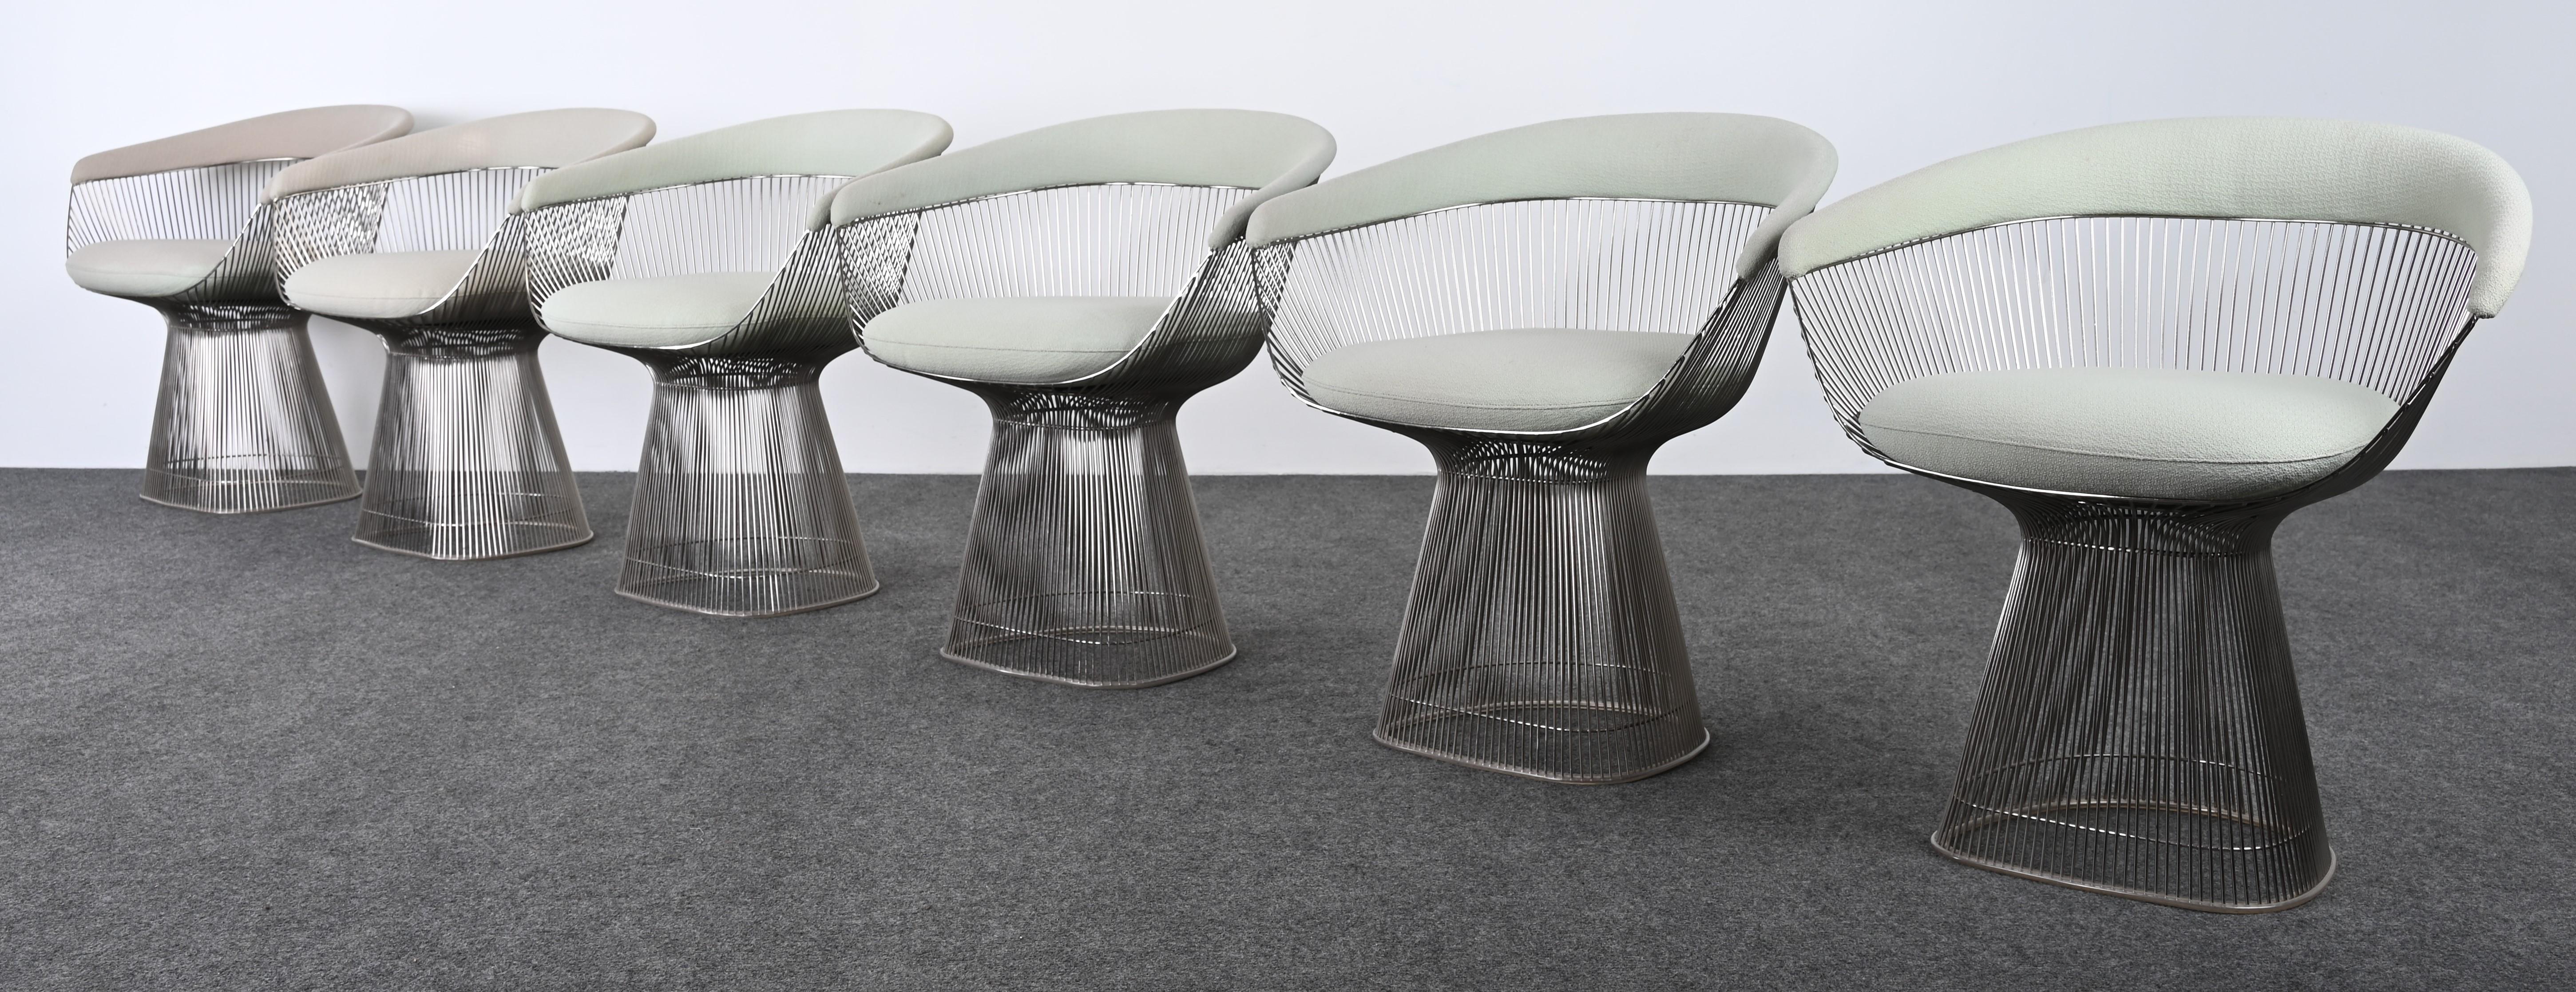 Un ensemble exquis de six chaises de salle à manger conçues par Warren Platner pour Knoll. Ces chaises de salle à manger emblématiques s'intègrent parfaitement dans un intérieur contemporain, transitionnel ou traditionnel. Cet ensemble présente un